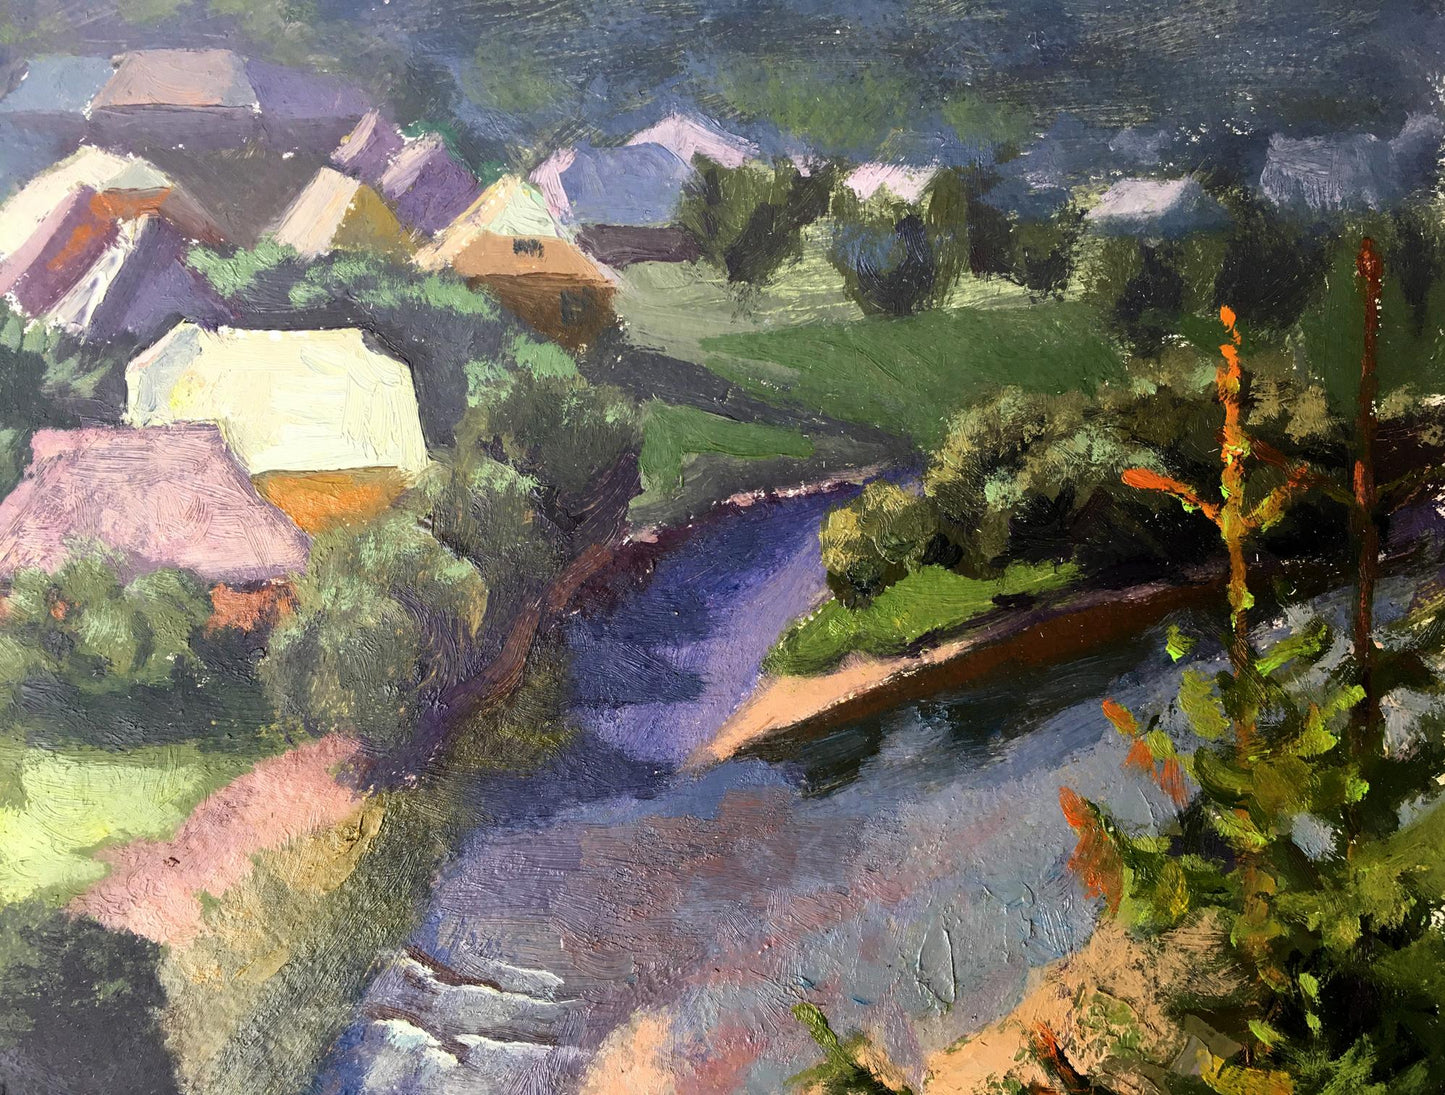 Oil painting Village river Batrakov Vladimir Grigorievich